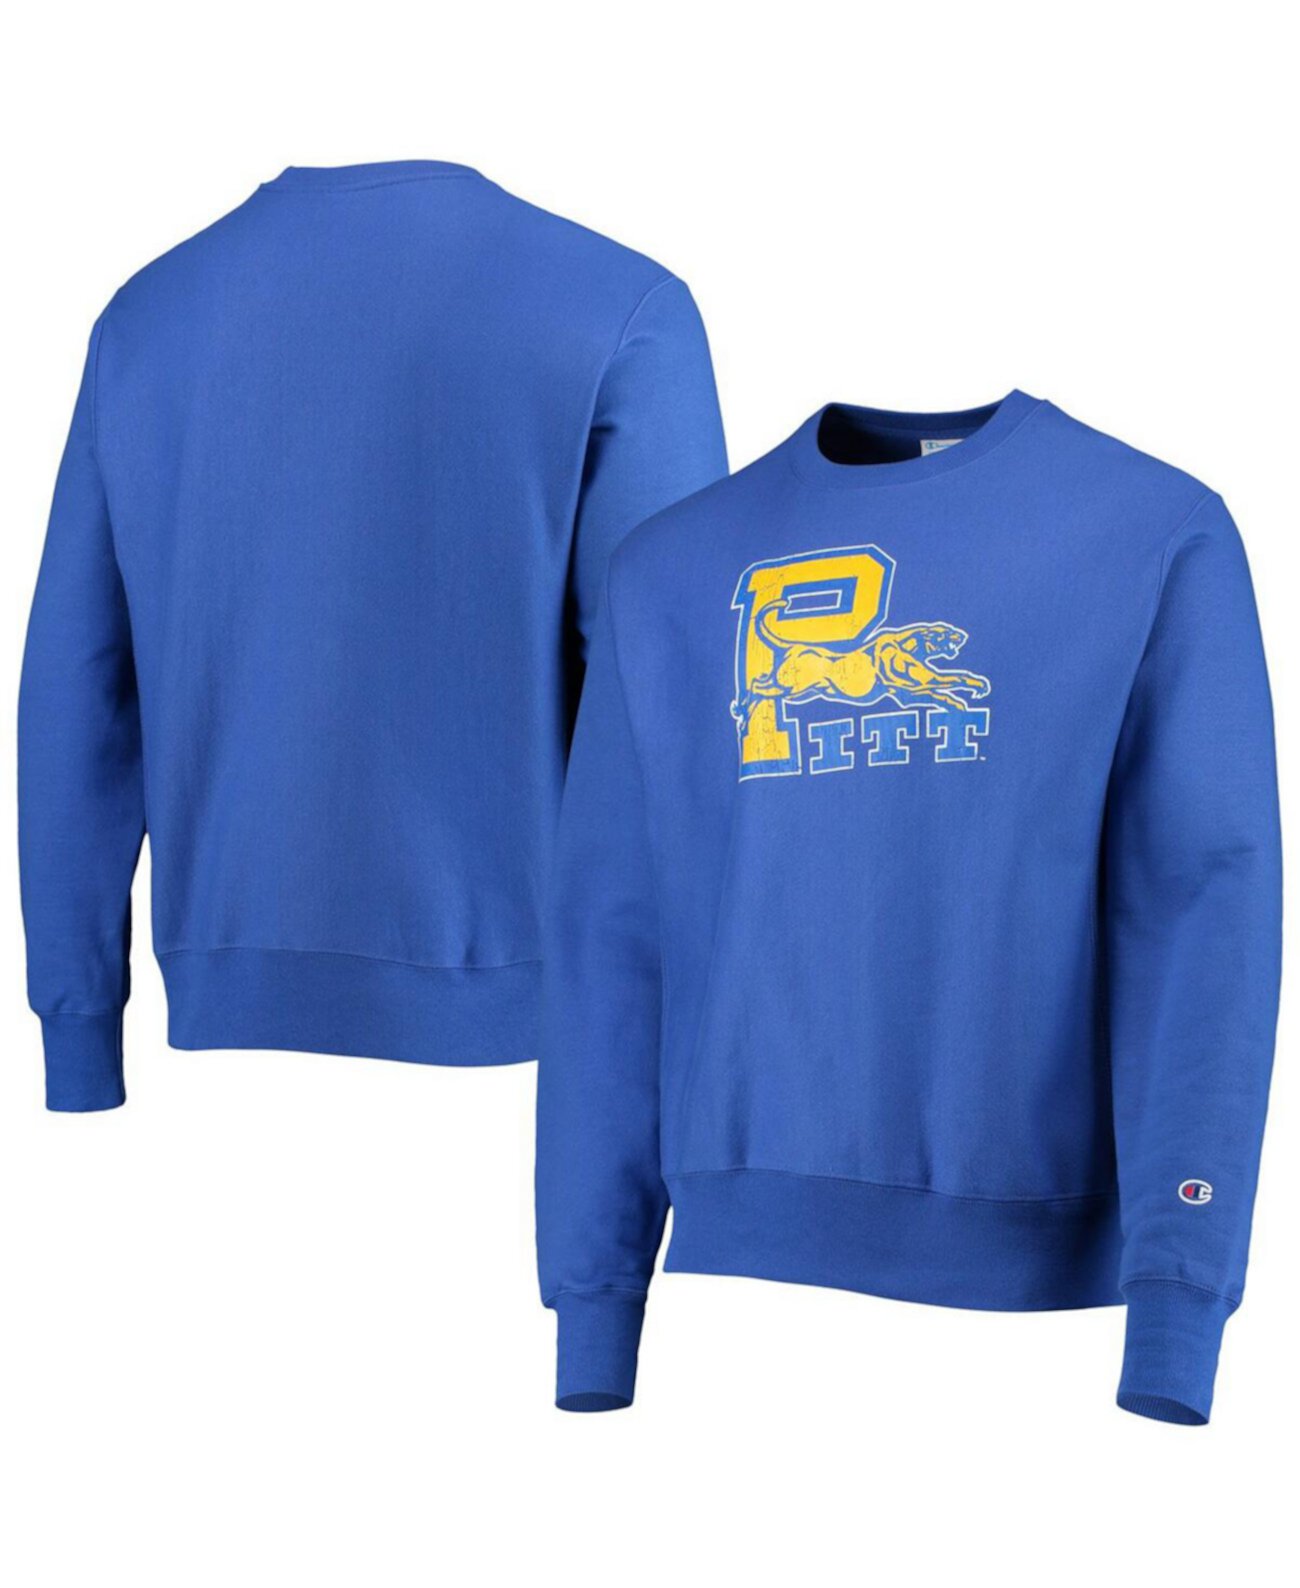 Мужской пуловер обратного плетения с логотипом Royal Pitt Panthers Vault, толстовка Champion